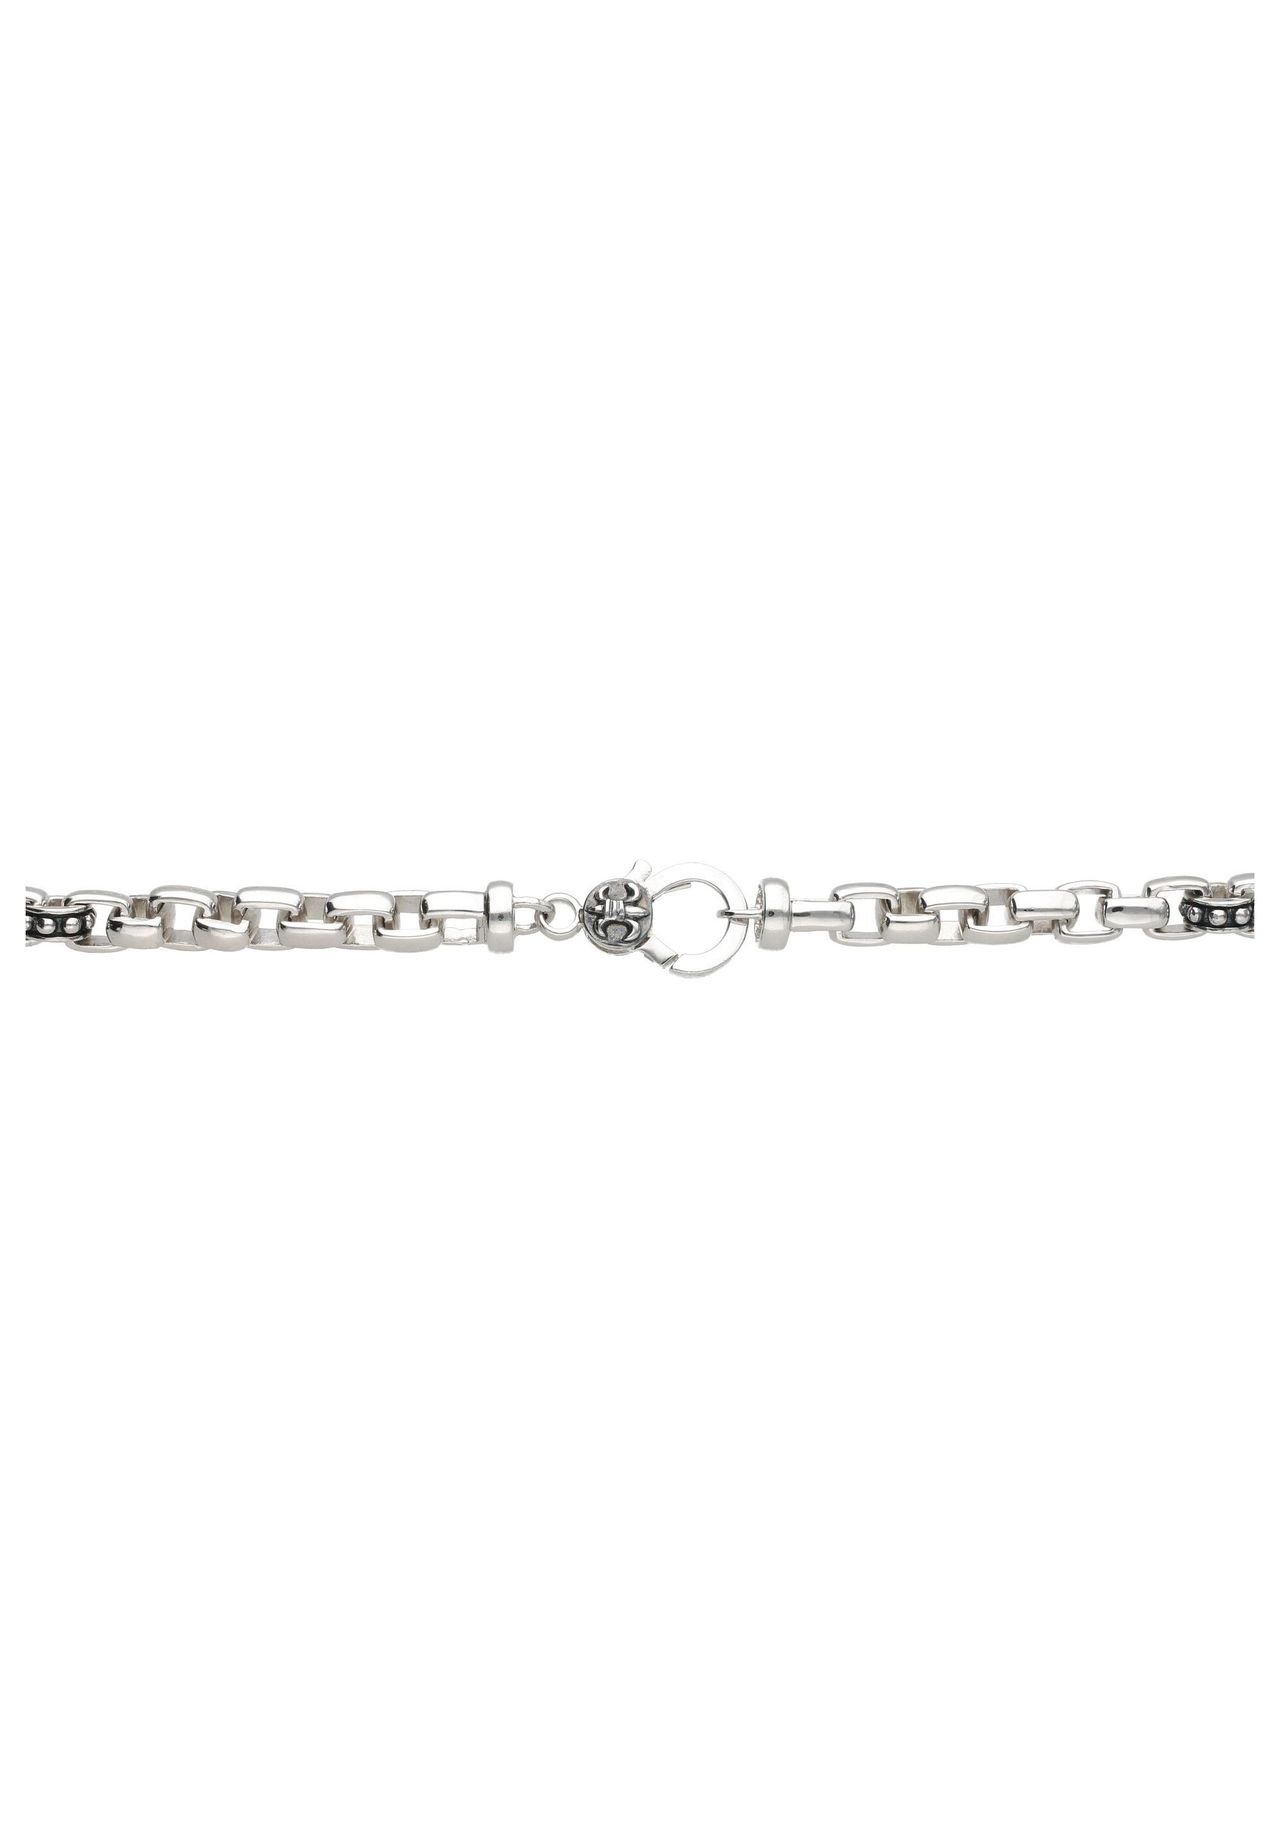 GIORGIO MARTELLO MILANO Armband eckige Glieder, teilweise geschwärzt, Silber  925 | GALERIA | Silberarmbänder